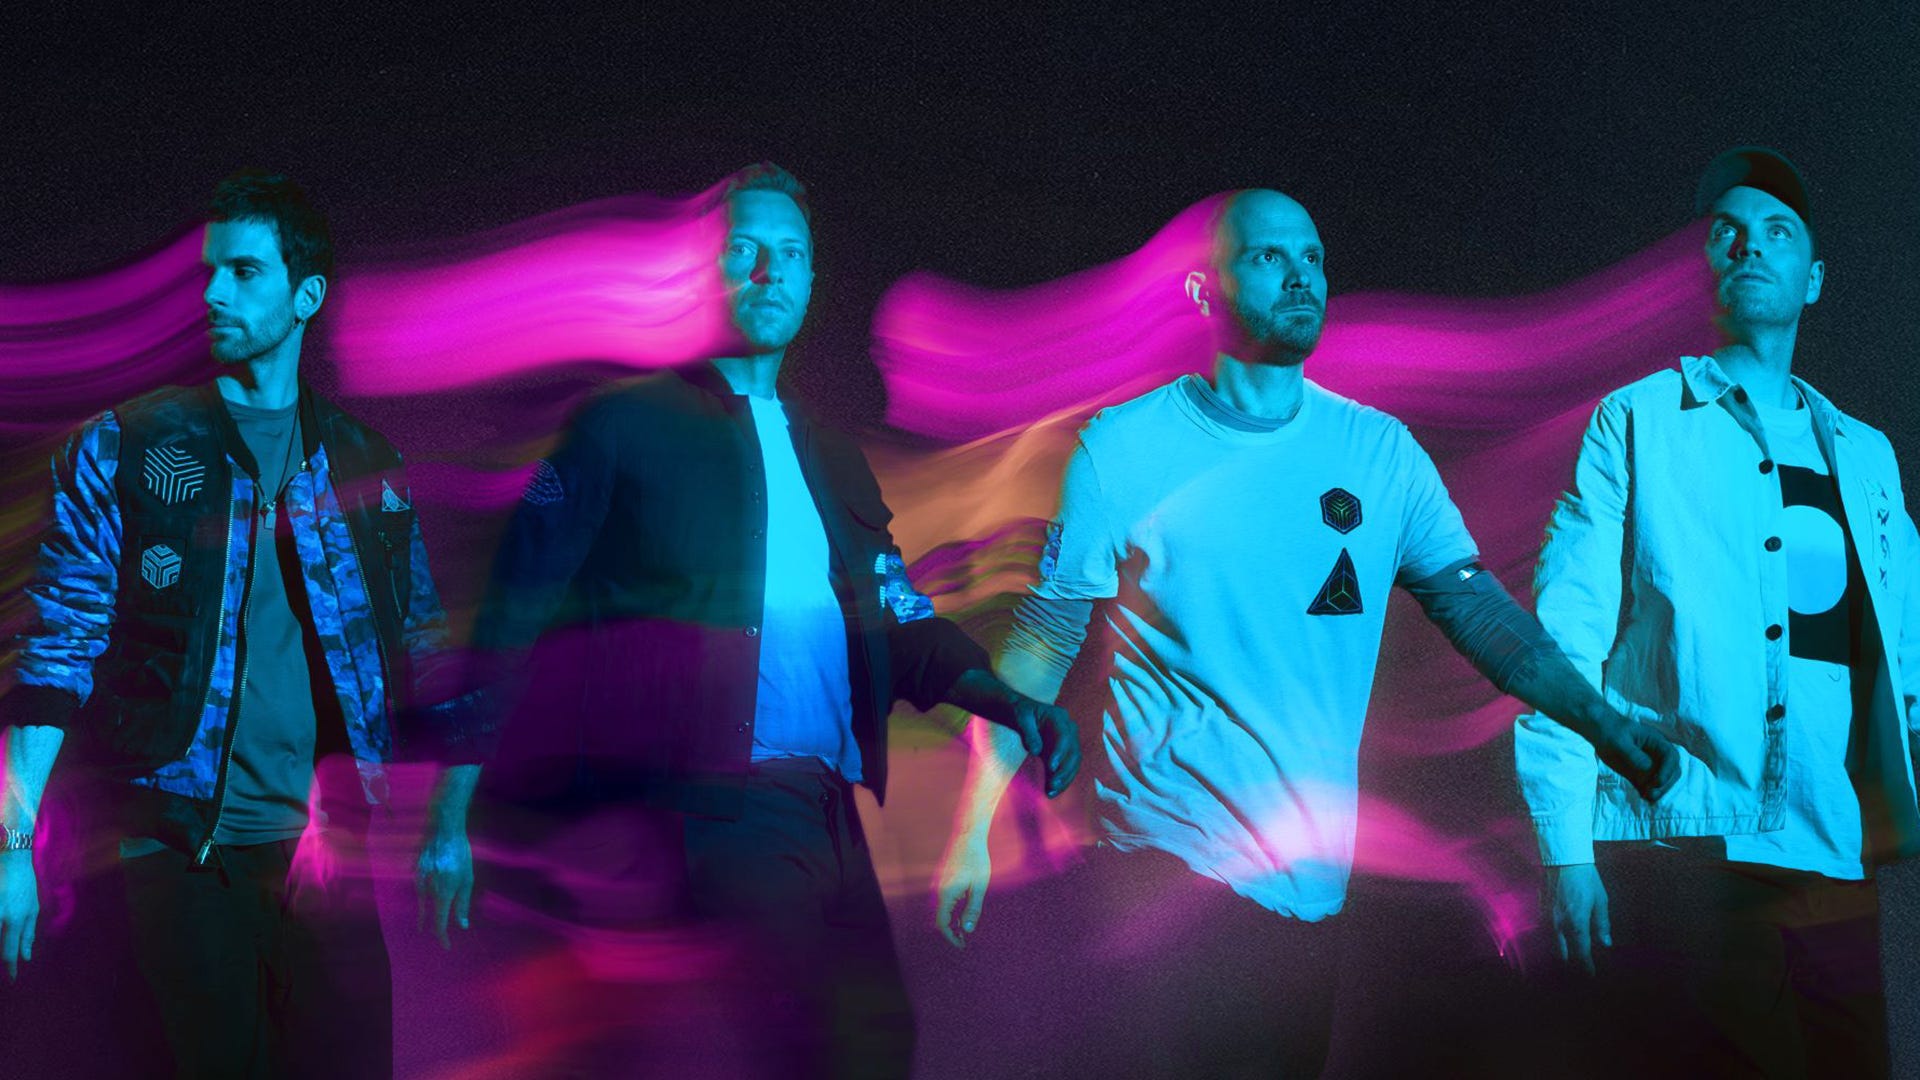 ชมมิวสิกวิดีโอ Sci-Fi สไตล์ Coldplay ในเพลง​ “Higher Power”